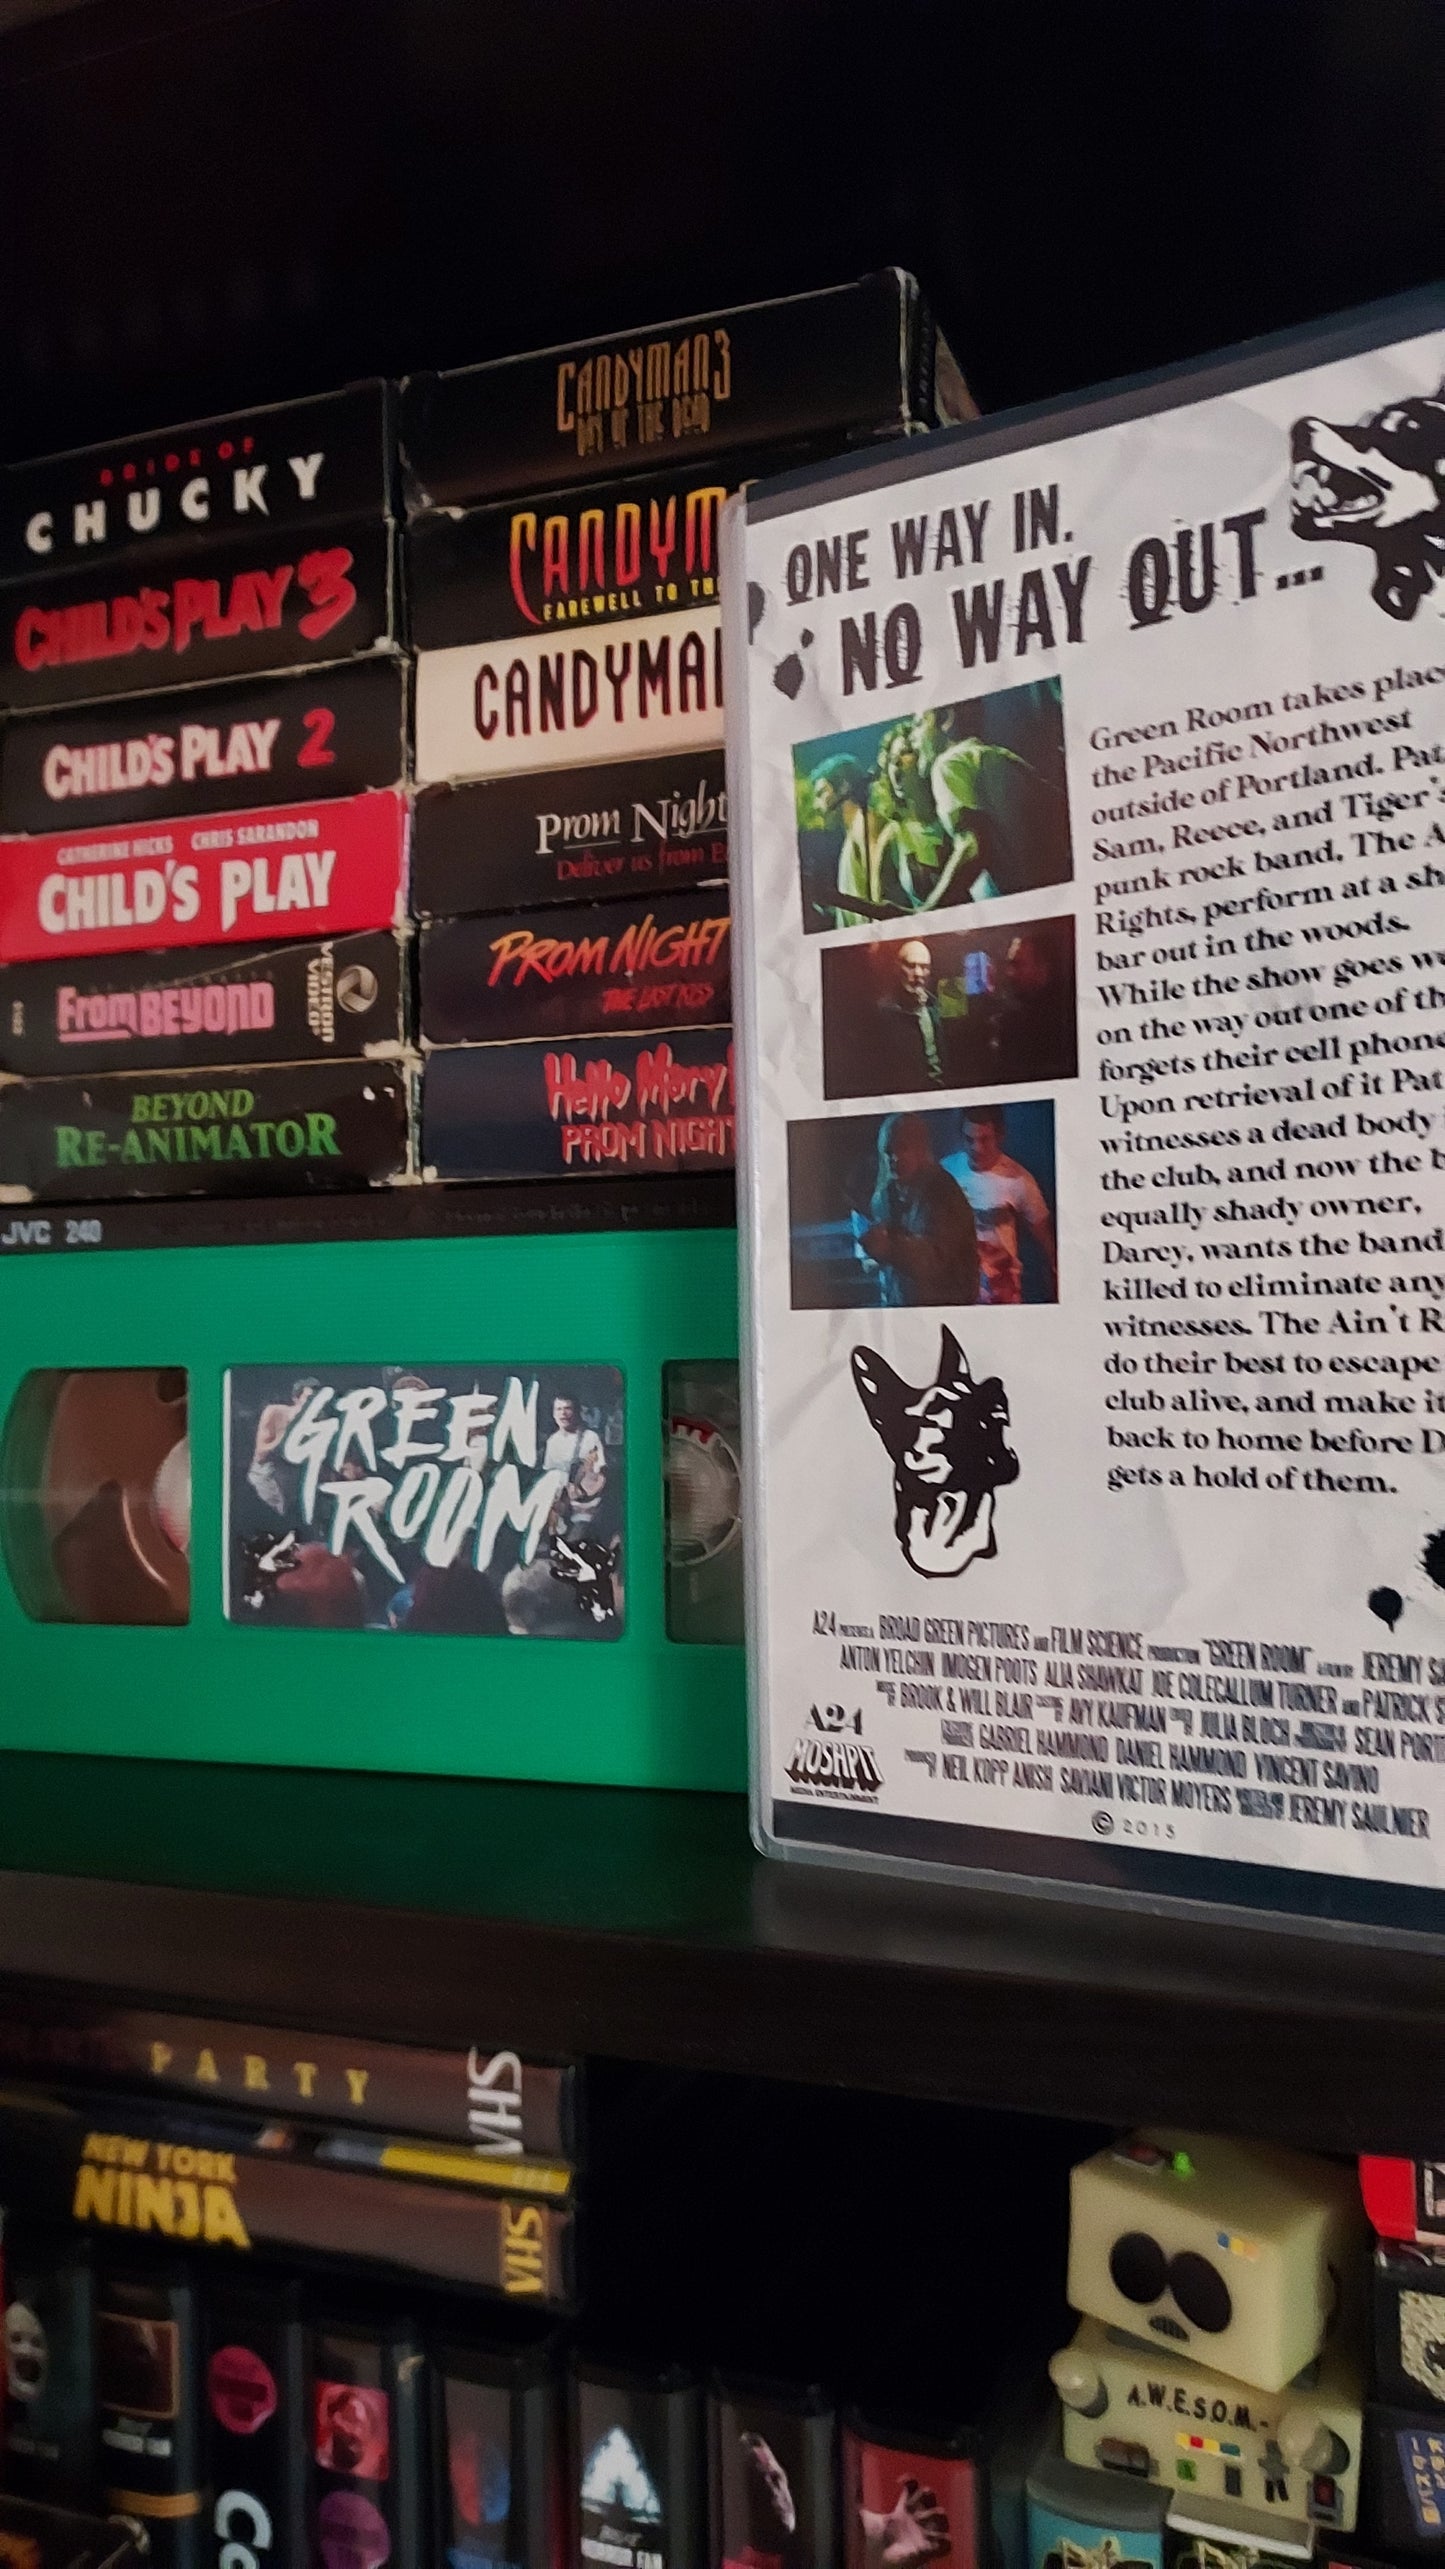 Green Room Artpiece VHS